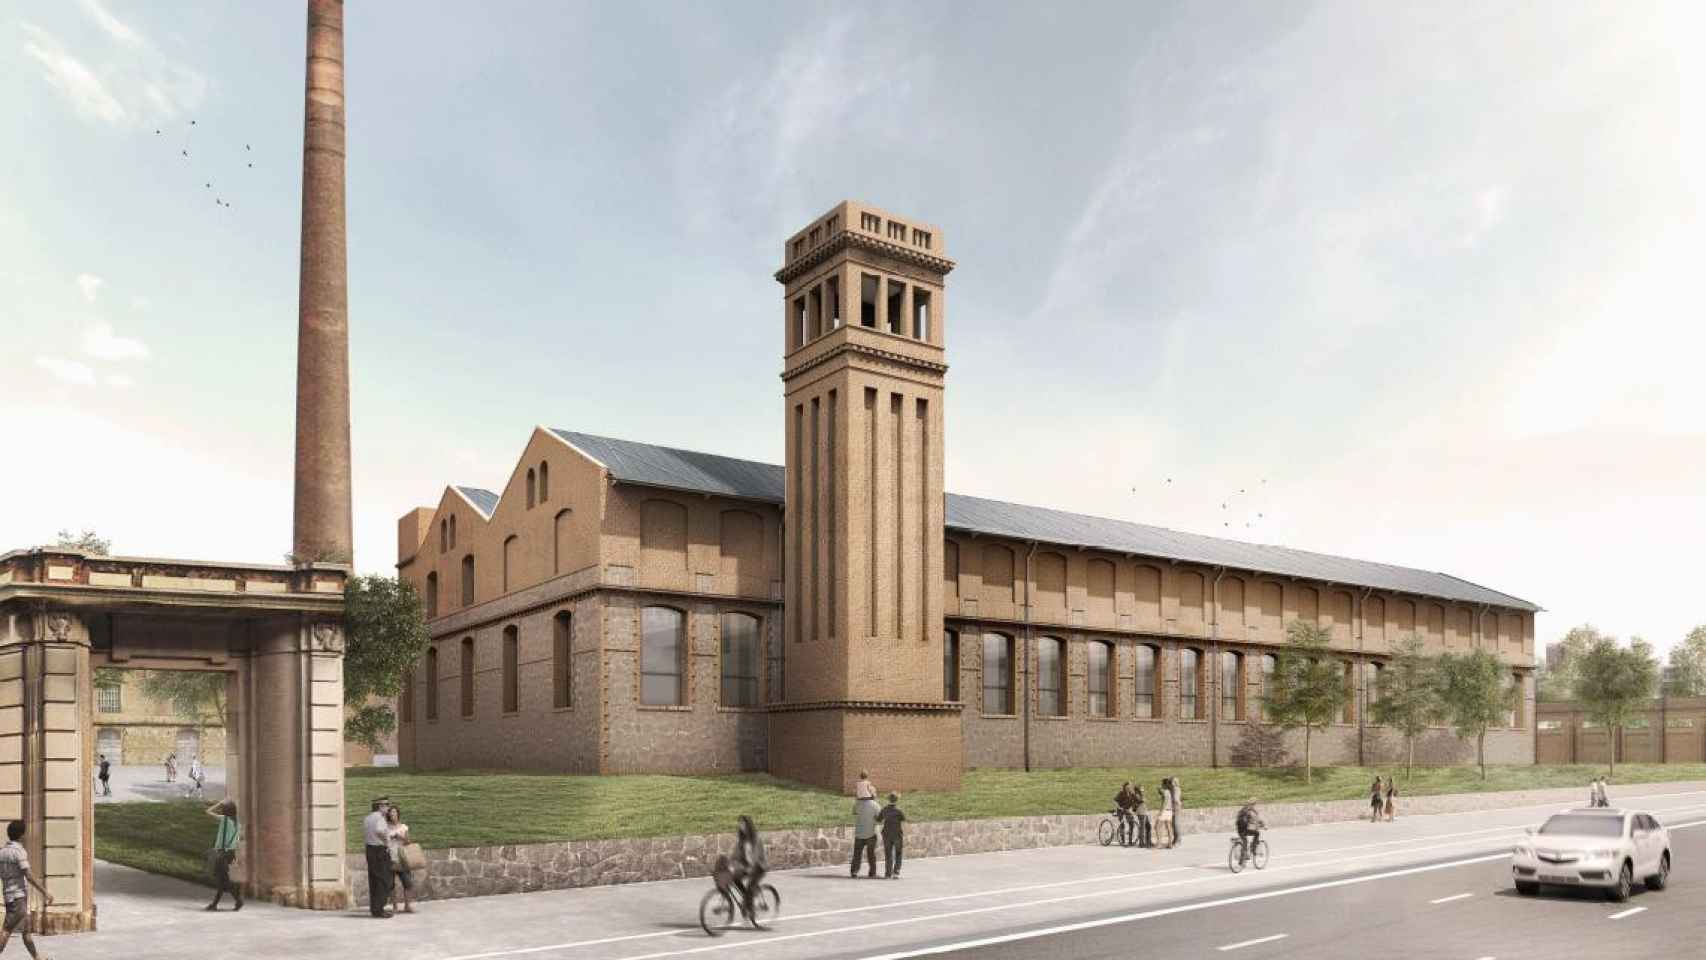 Diseño de la futura sede de Can Batlló tras la rehabilitación para ser sede de la Escuela de medios audiovisuales / CG